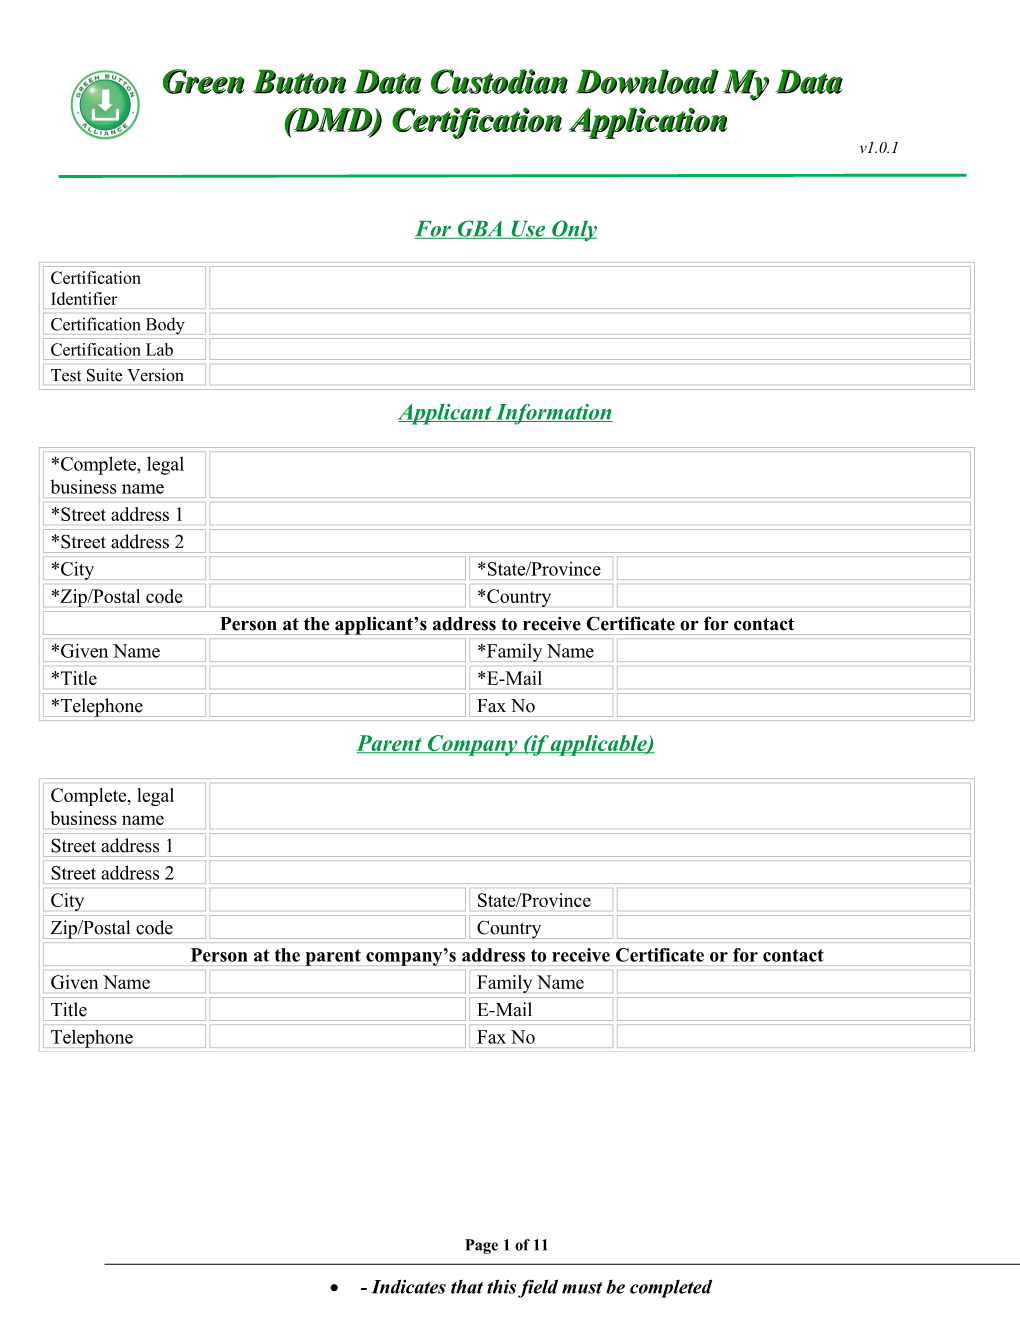 Green Button Data Custodian Downloadt My Data (DMD) Certification Application 1.0.1